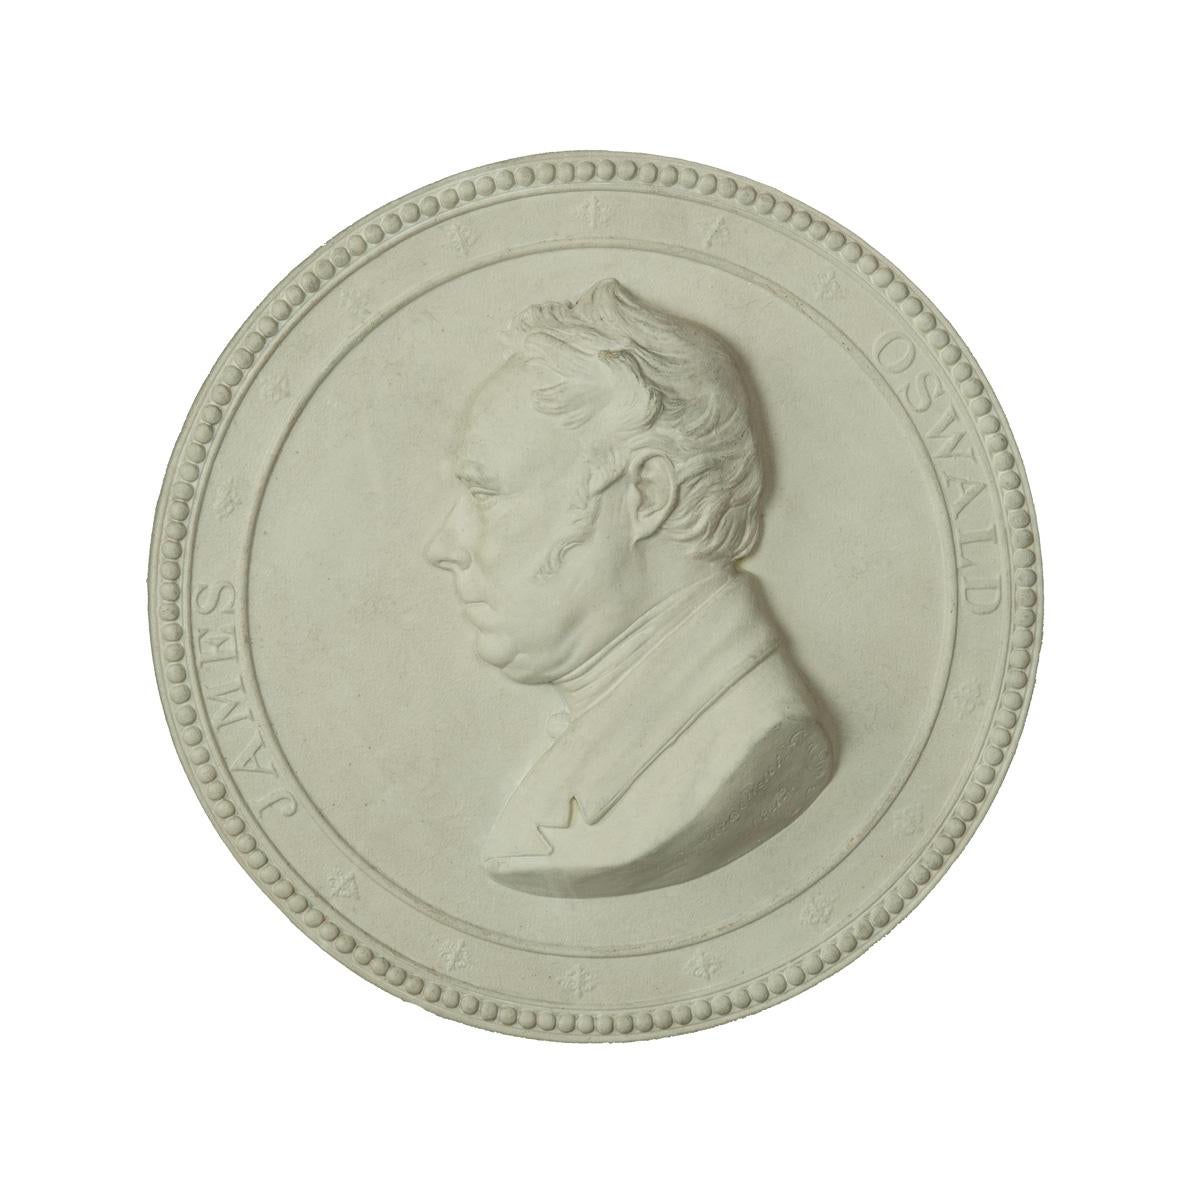 Plaque de portrait en plâtre encadrée du député réformiste de Glasgow James Oswald, signée et datée Carlo Marochetti, 1842, de forme circulaire, représentée de face à droite dans une bordure noire et un cadre d'origine en bois doré et vitré.

Une